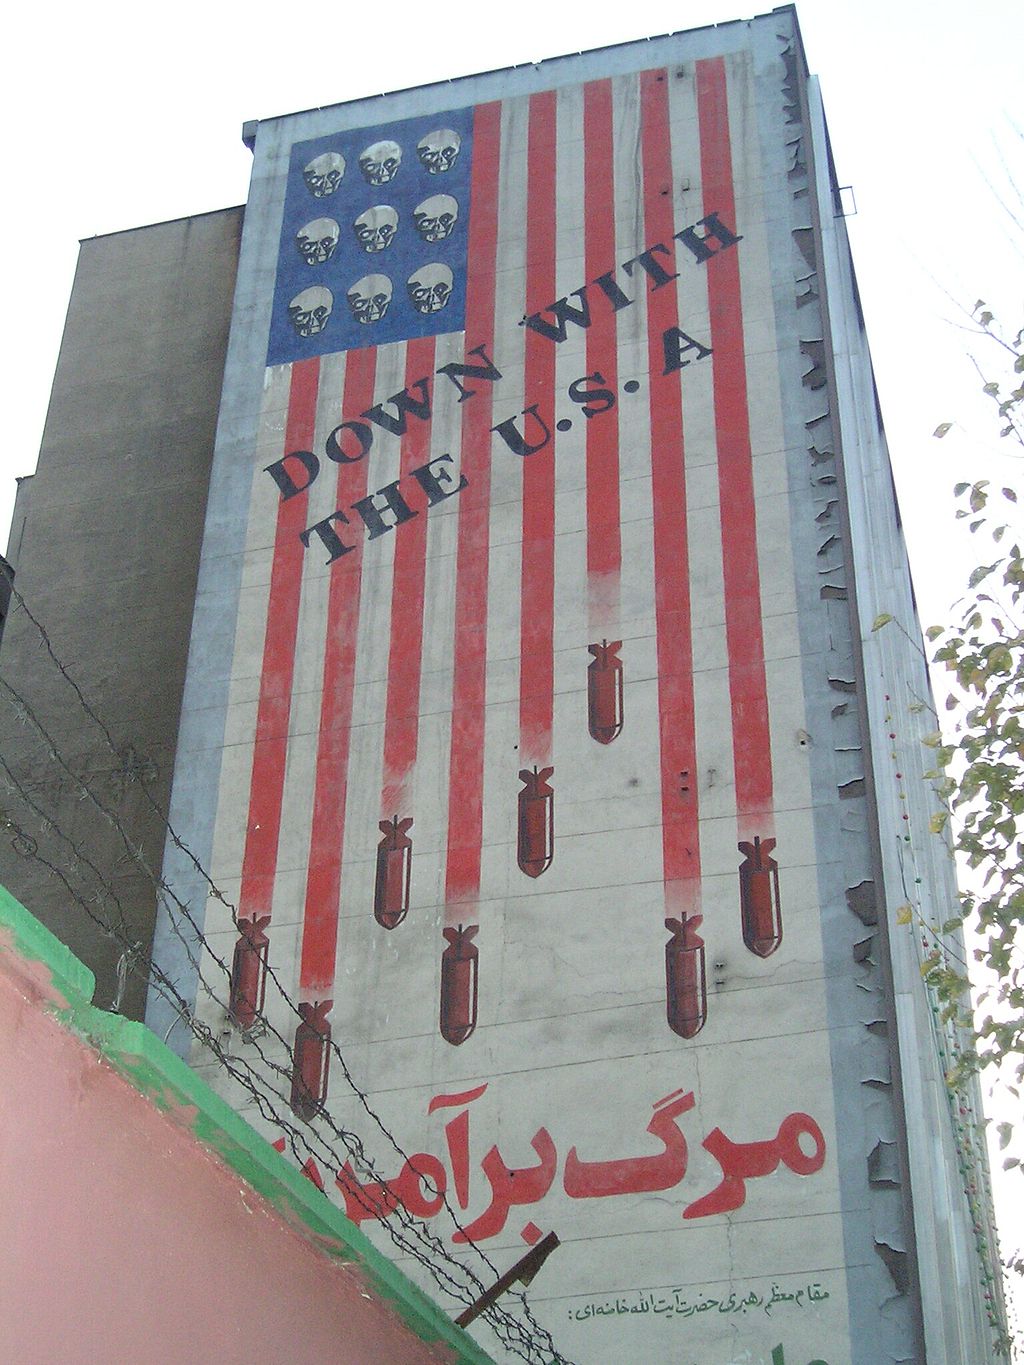 Die Irankrise 2012 aus chinesischer Perspektive – Die Welt vor einem Horrorszenario?